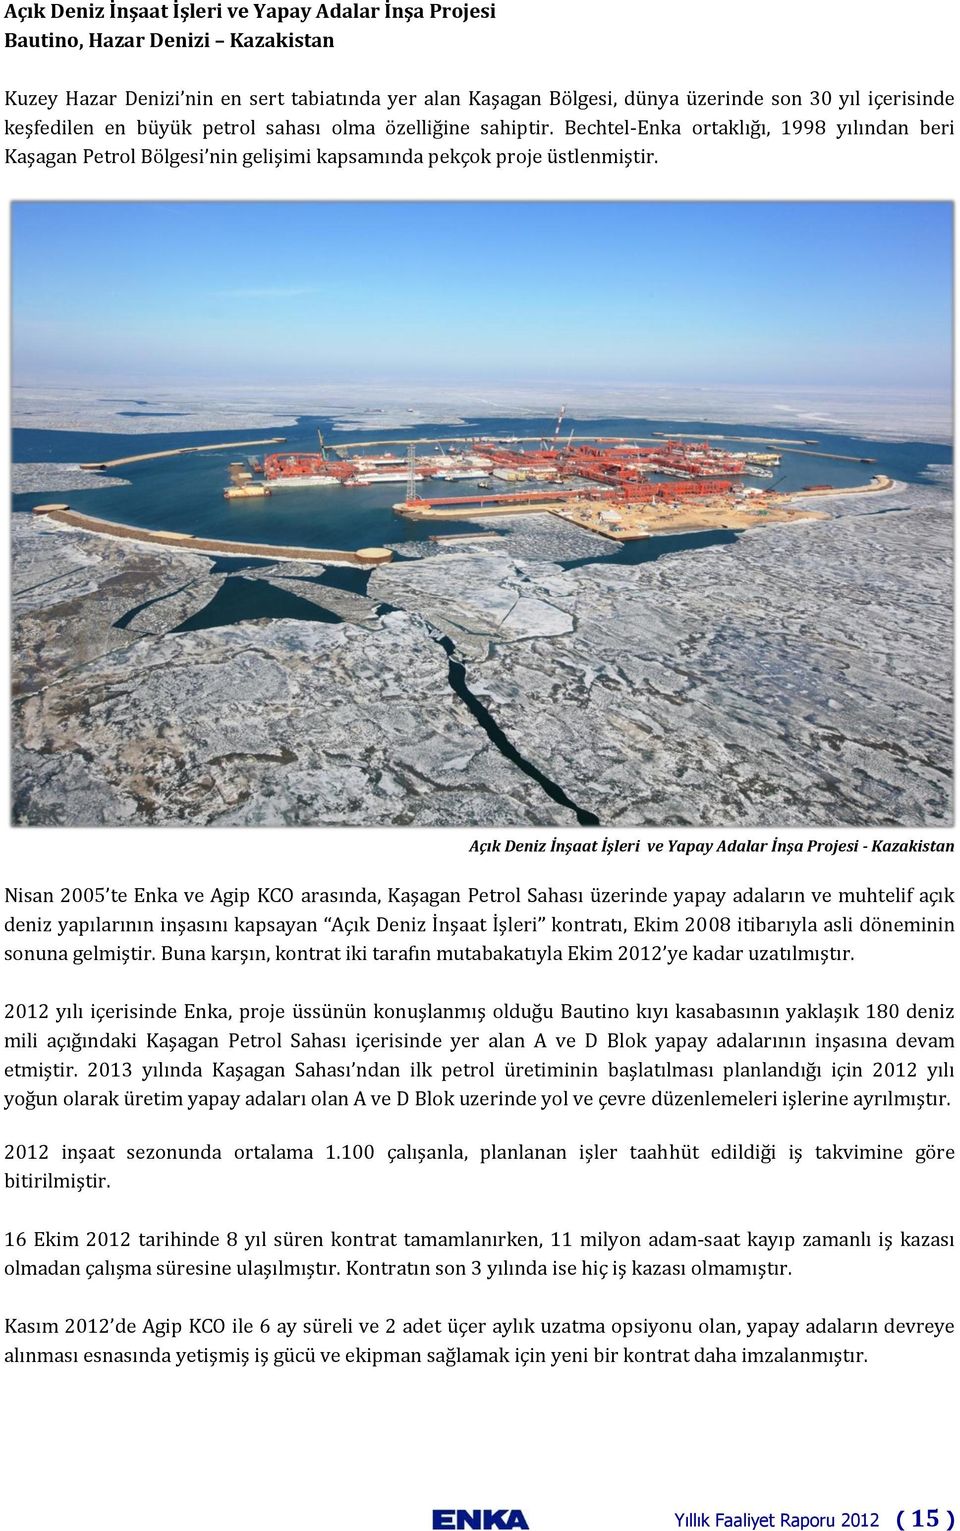 Açık Deniz İnşaat İşleri ve Yapay Adalar İnşa Projesi - Kazakistan Nisan 2005 te Enka ve Agip KCO arasında, Kaşagan Petrol Sahası üzerinde yapay adaların ve muhtelif açık deniz yapılarının inşasını